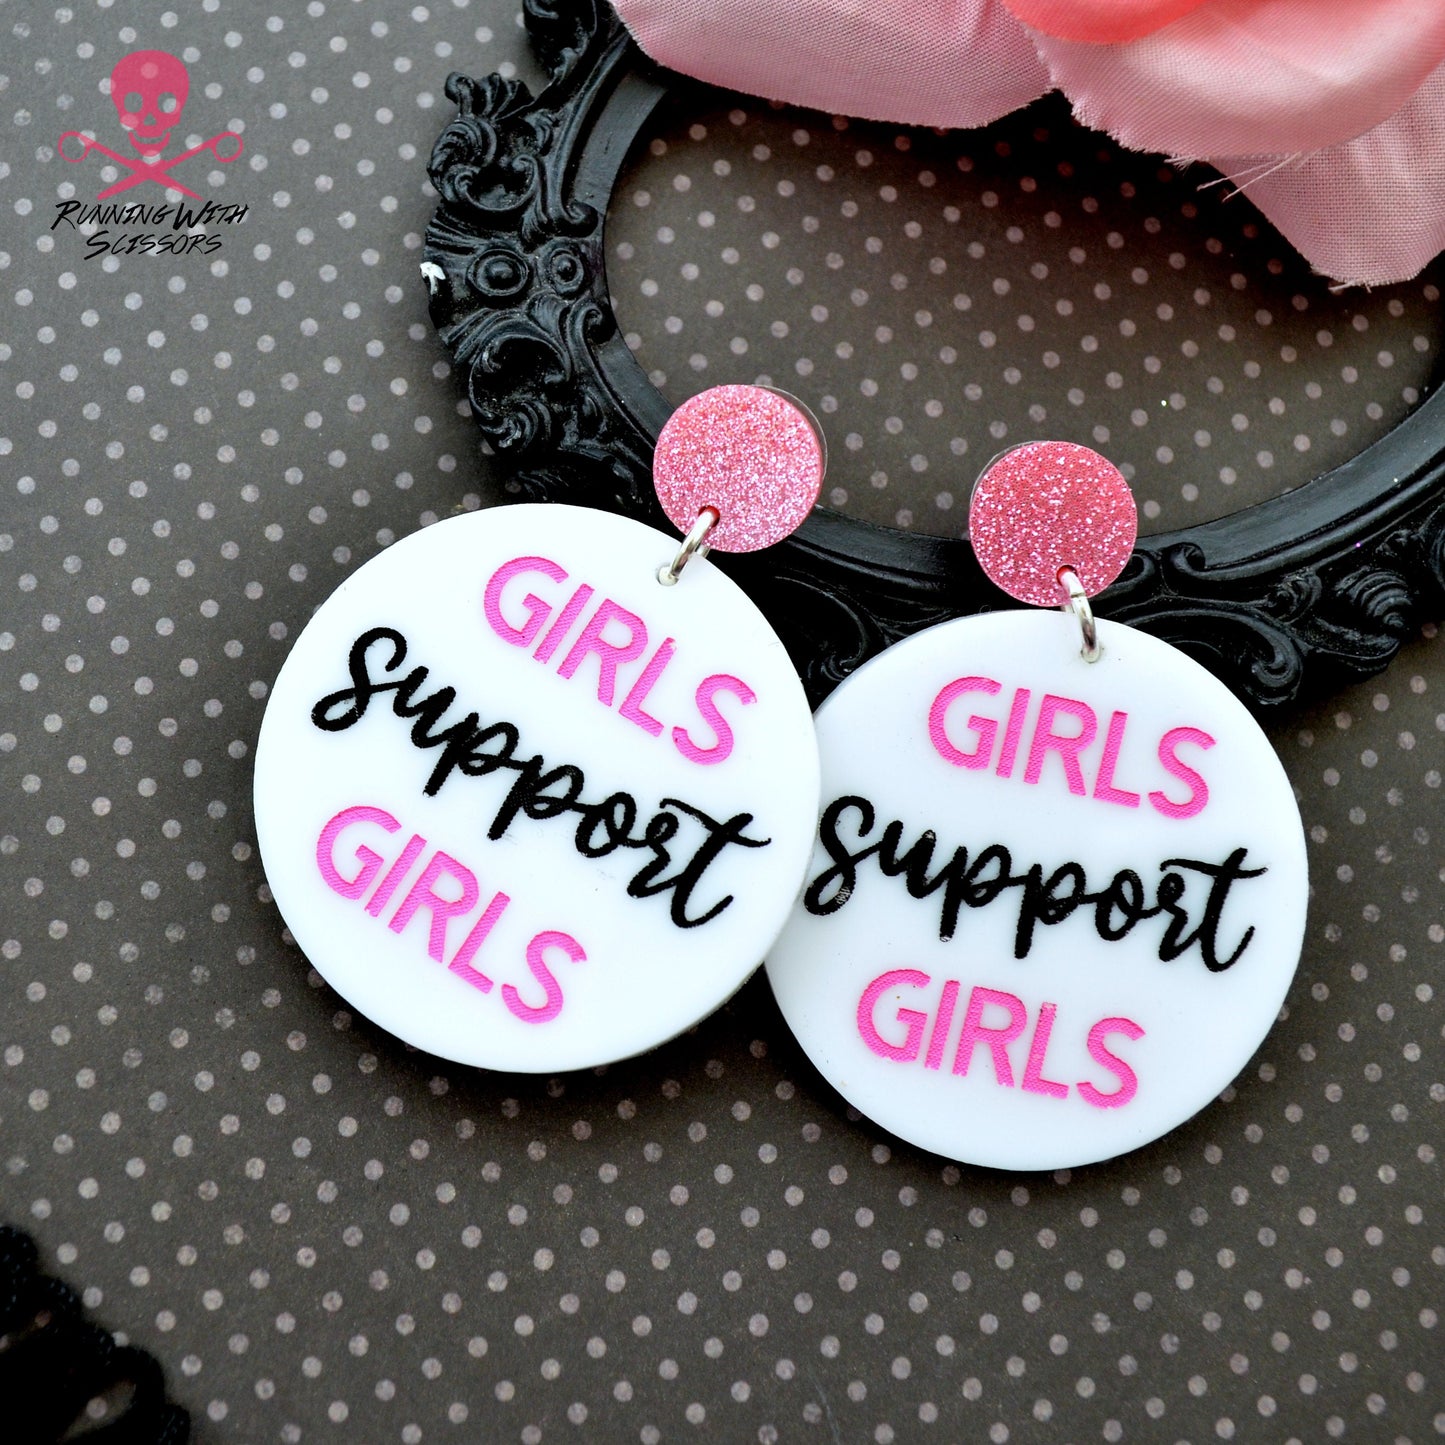 SALE Girls Support Girls - Laser Cut Acrylic Dangle Earrings